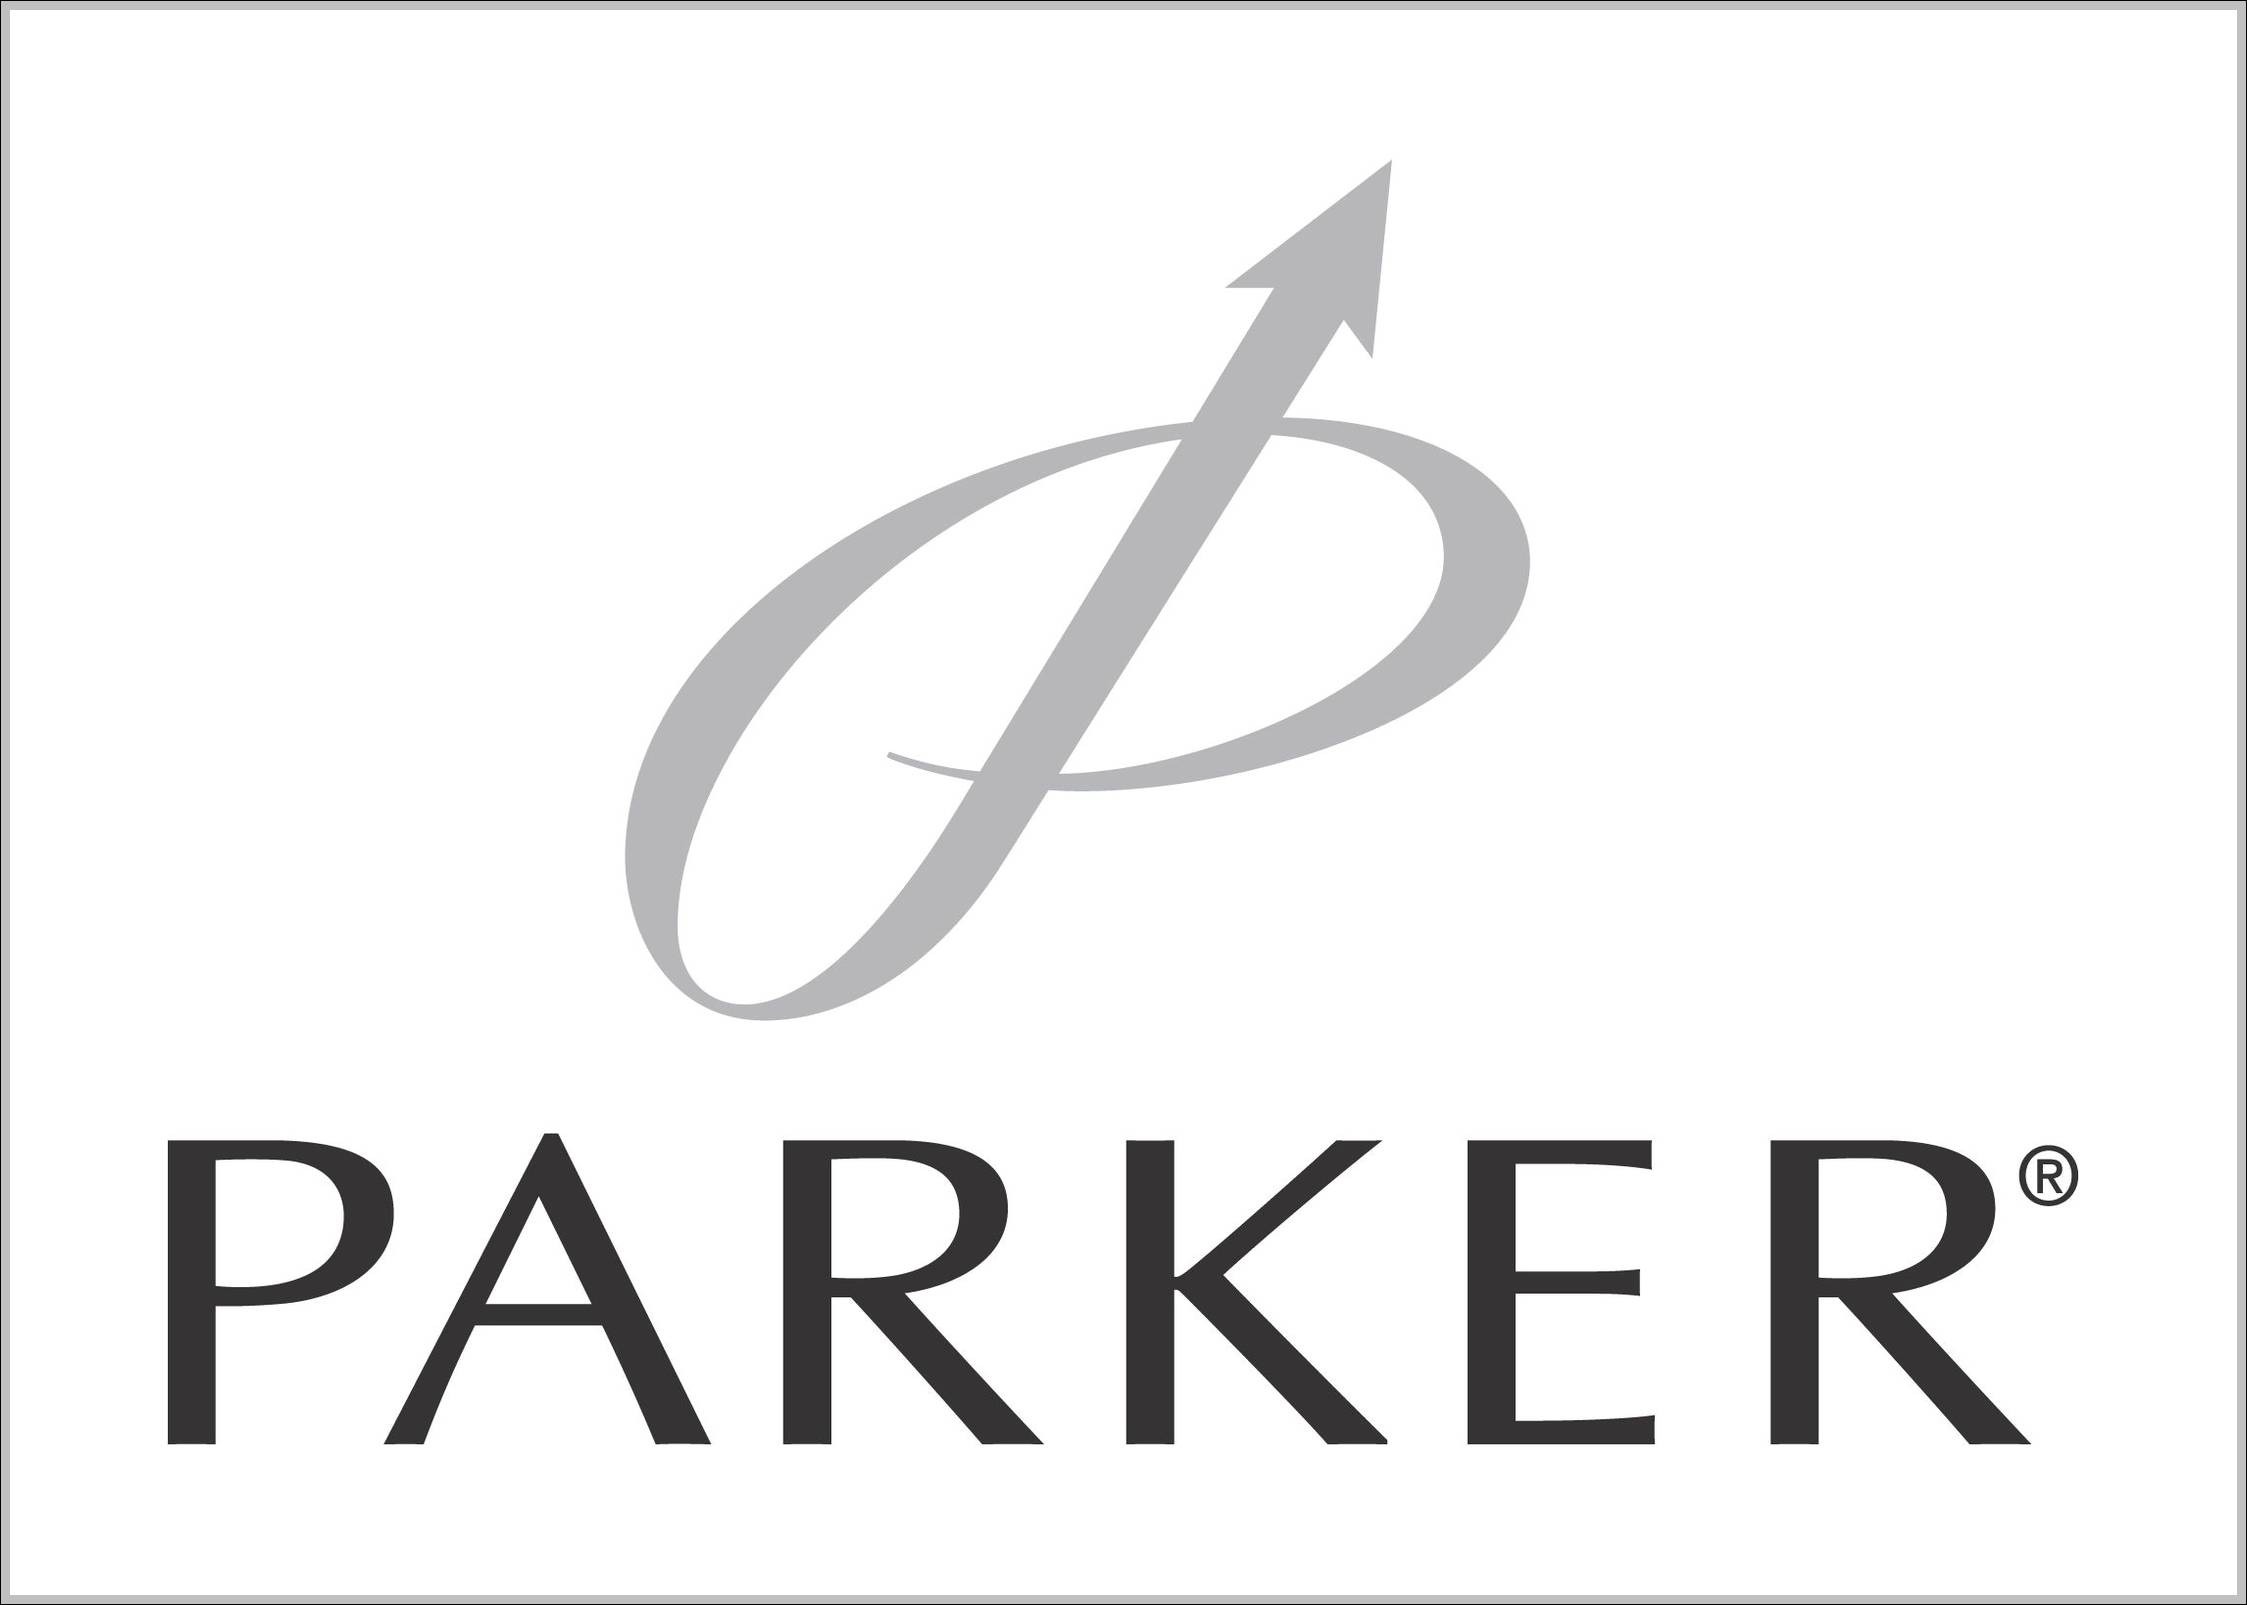 Parker logo transitory